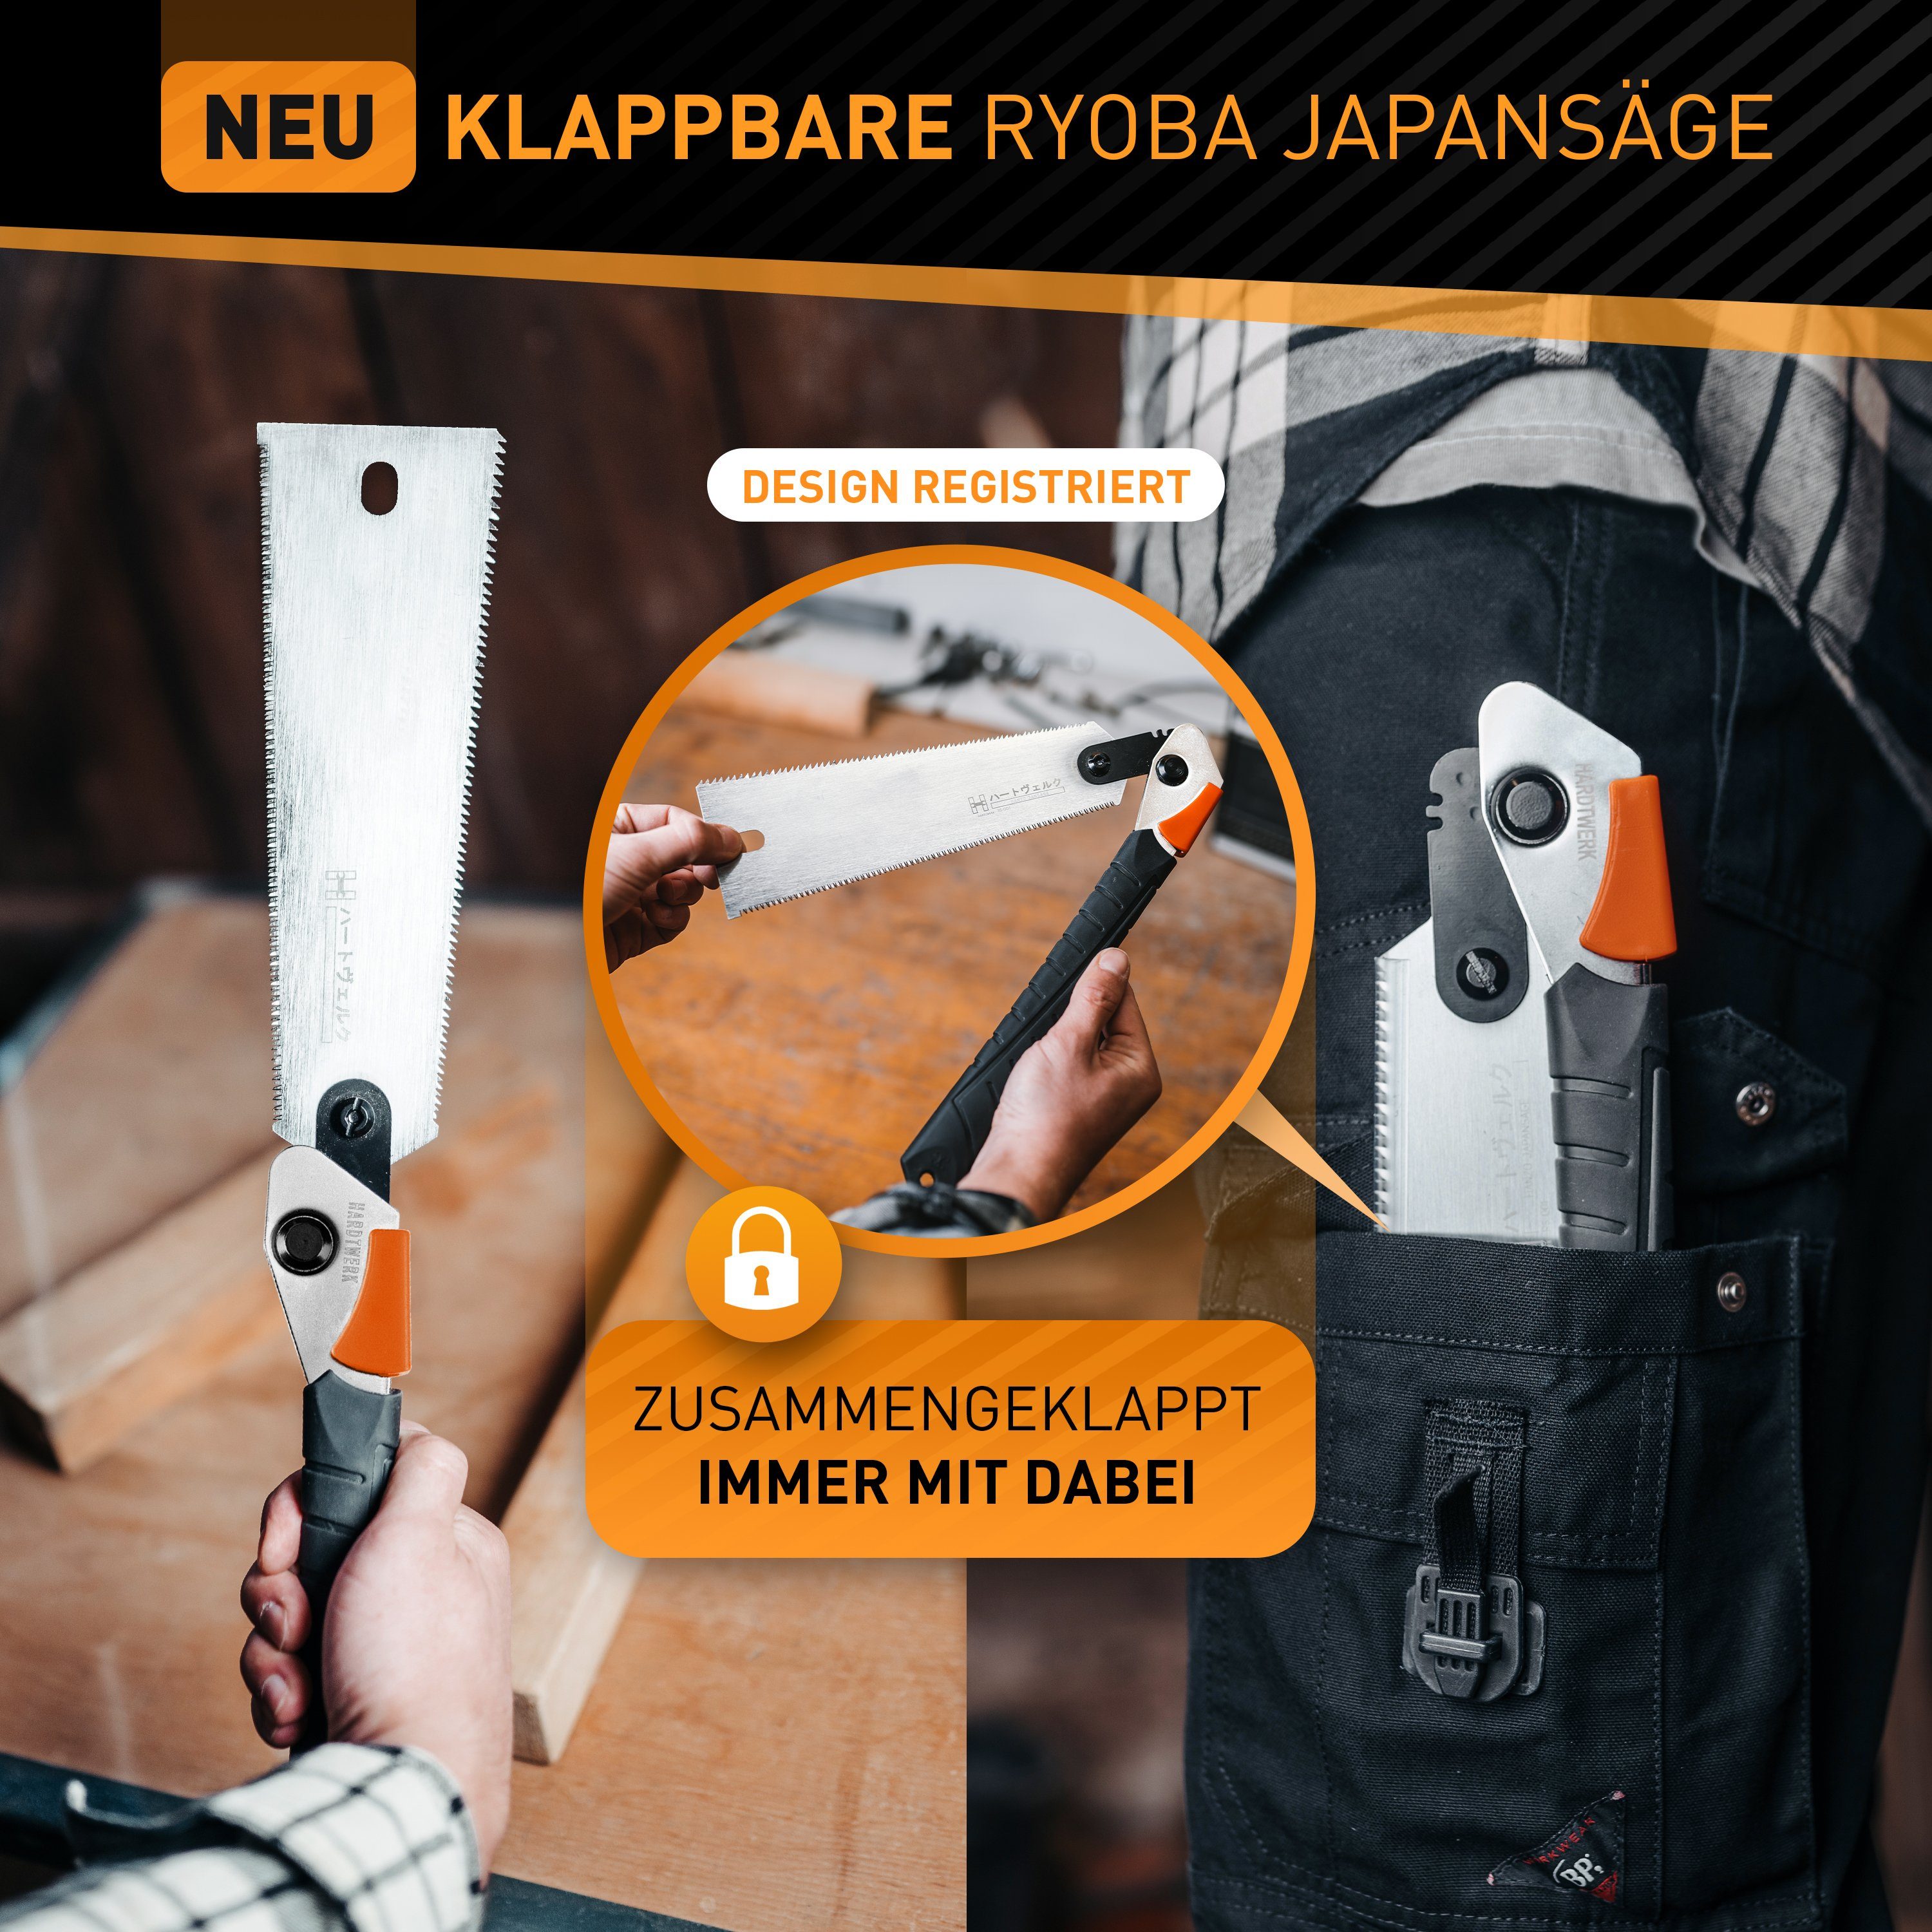 Hardtwerk® Japansäge Hanzo (SUPER-GRIP Feinsäge - & Heimwerker klappbar doppelseitig aus Säge Karbonstahl, japanische - Griff) für 240mm SK4